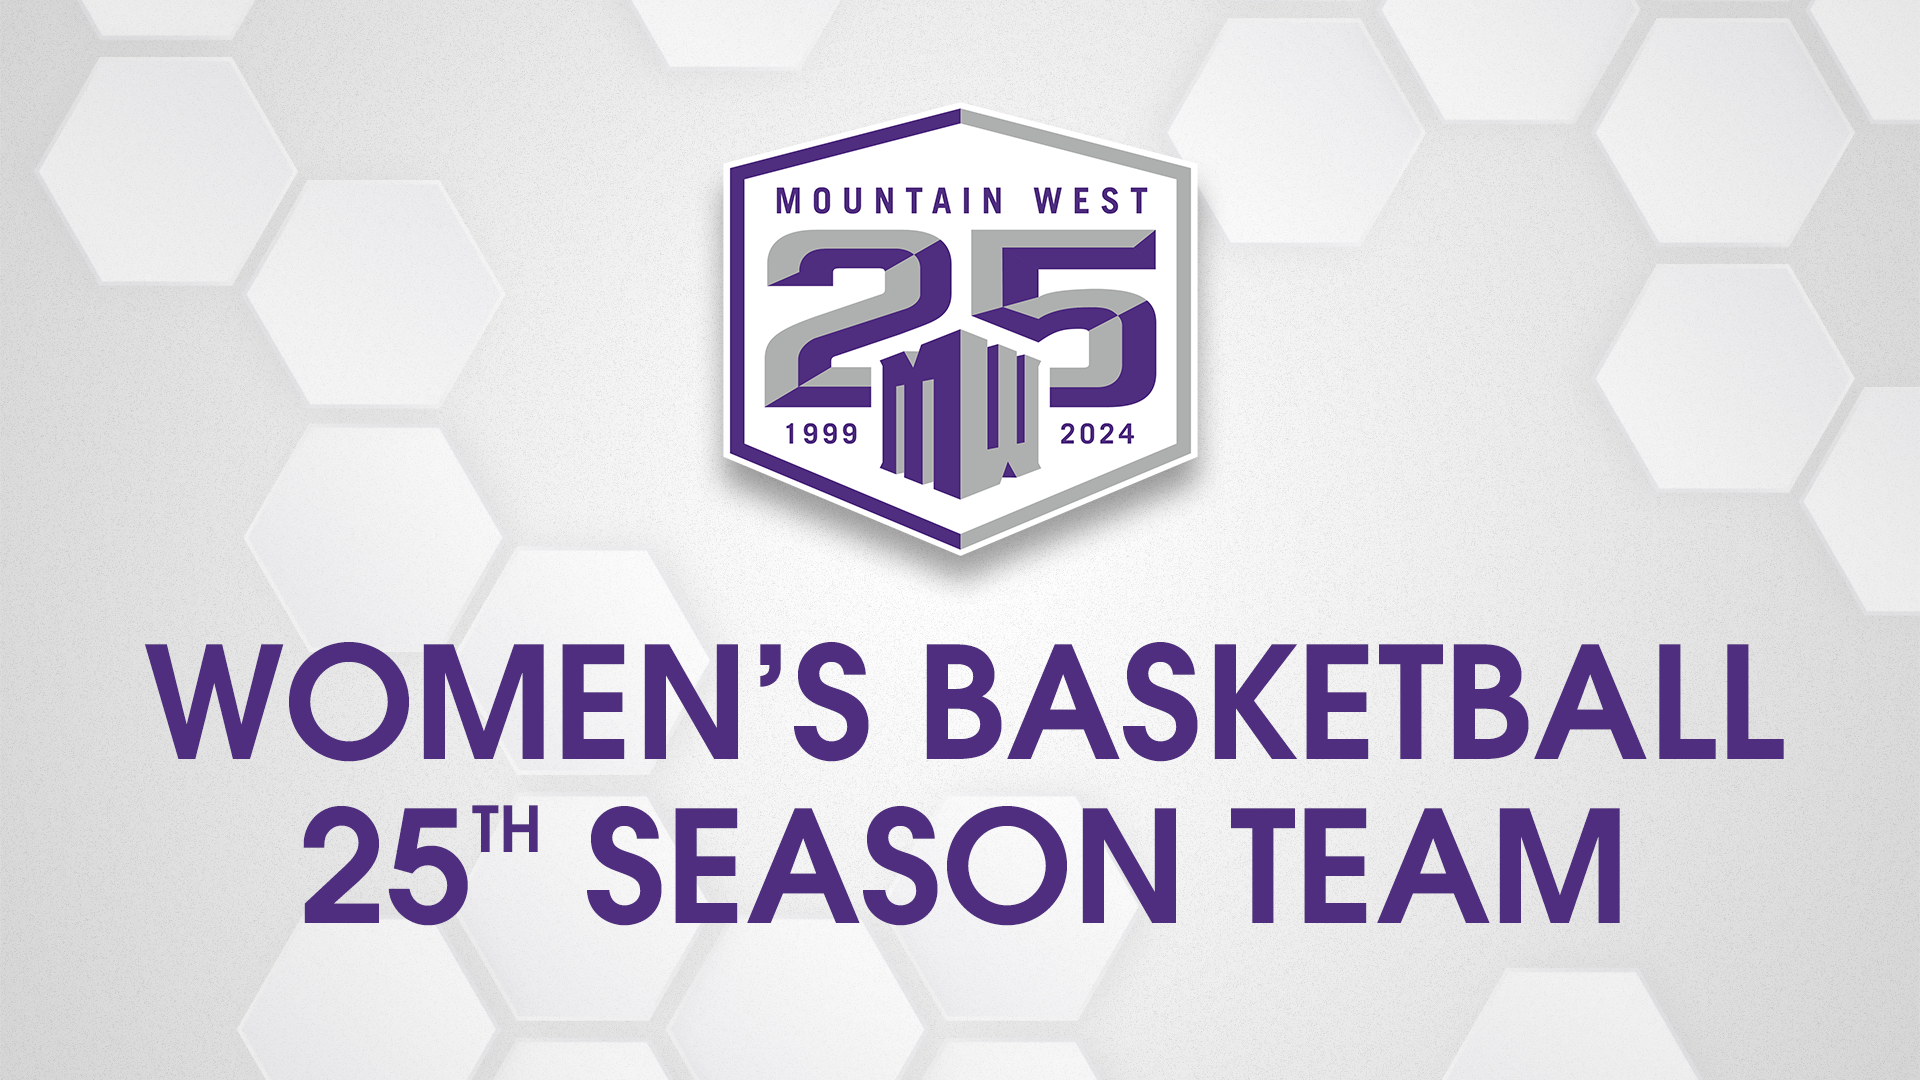 MW Announces Women's Basketball 25th Season Team